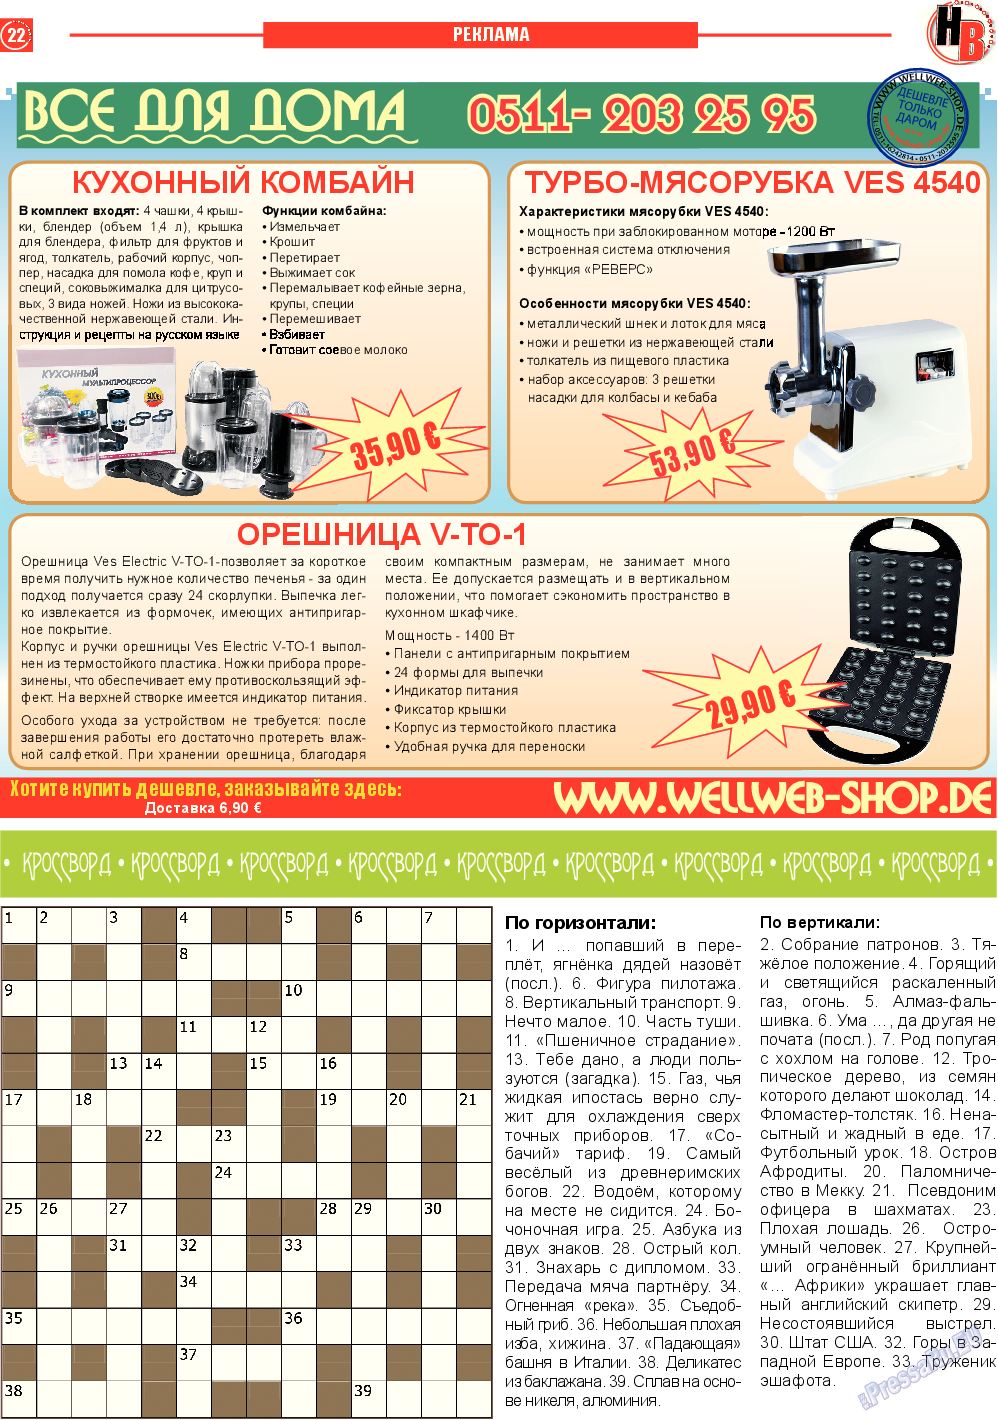 Наше время, газета. 2013 №7 стр.22